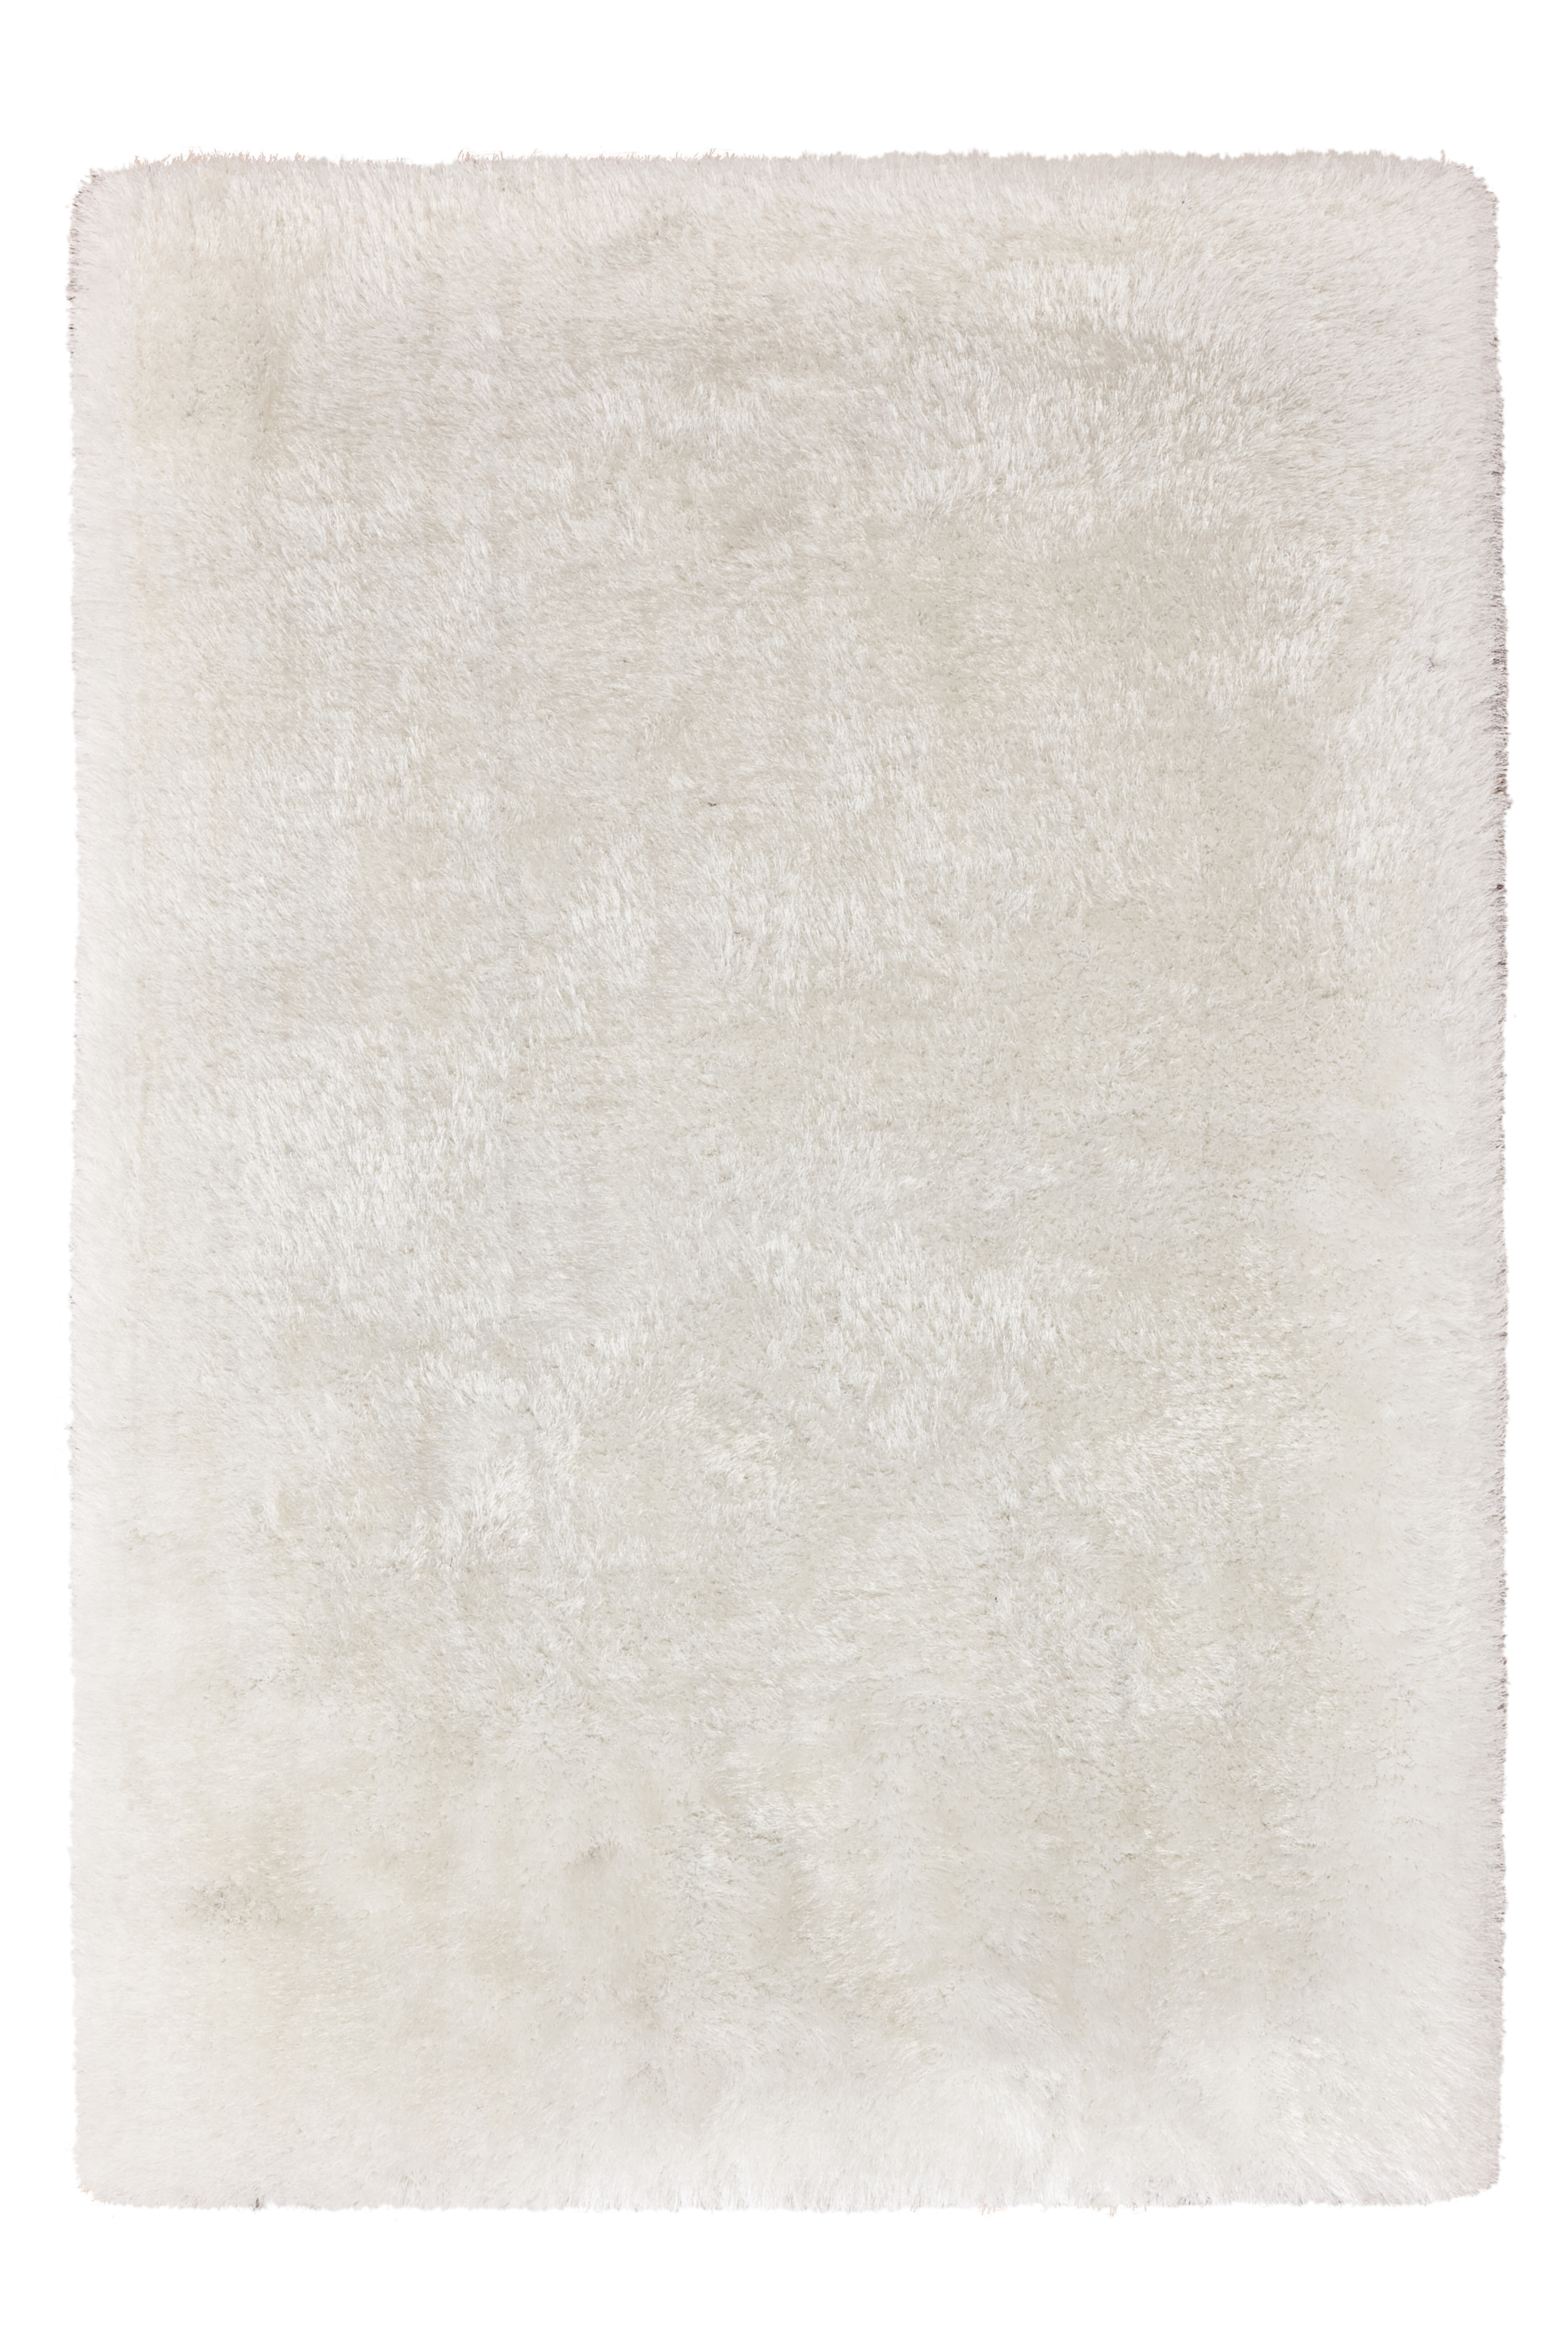 Kayoom Vloerkleed 'Cosy 310' kleur Wit, 120 x 170cm